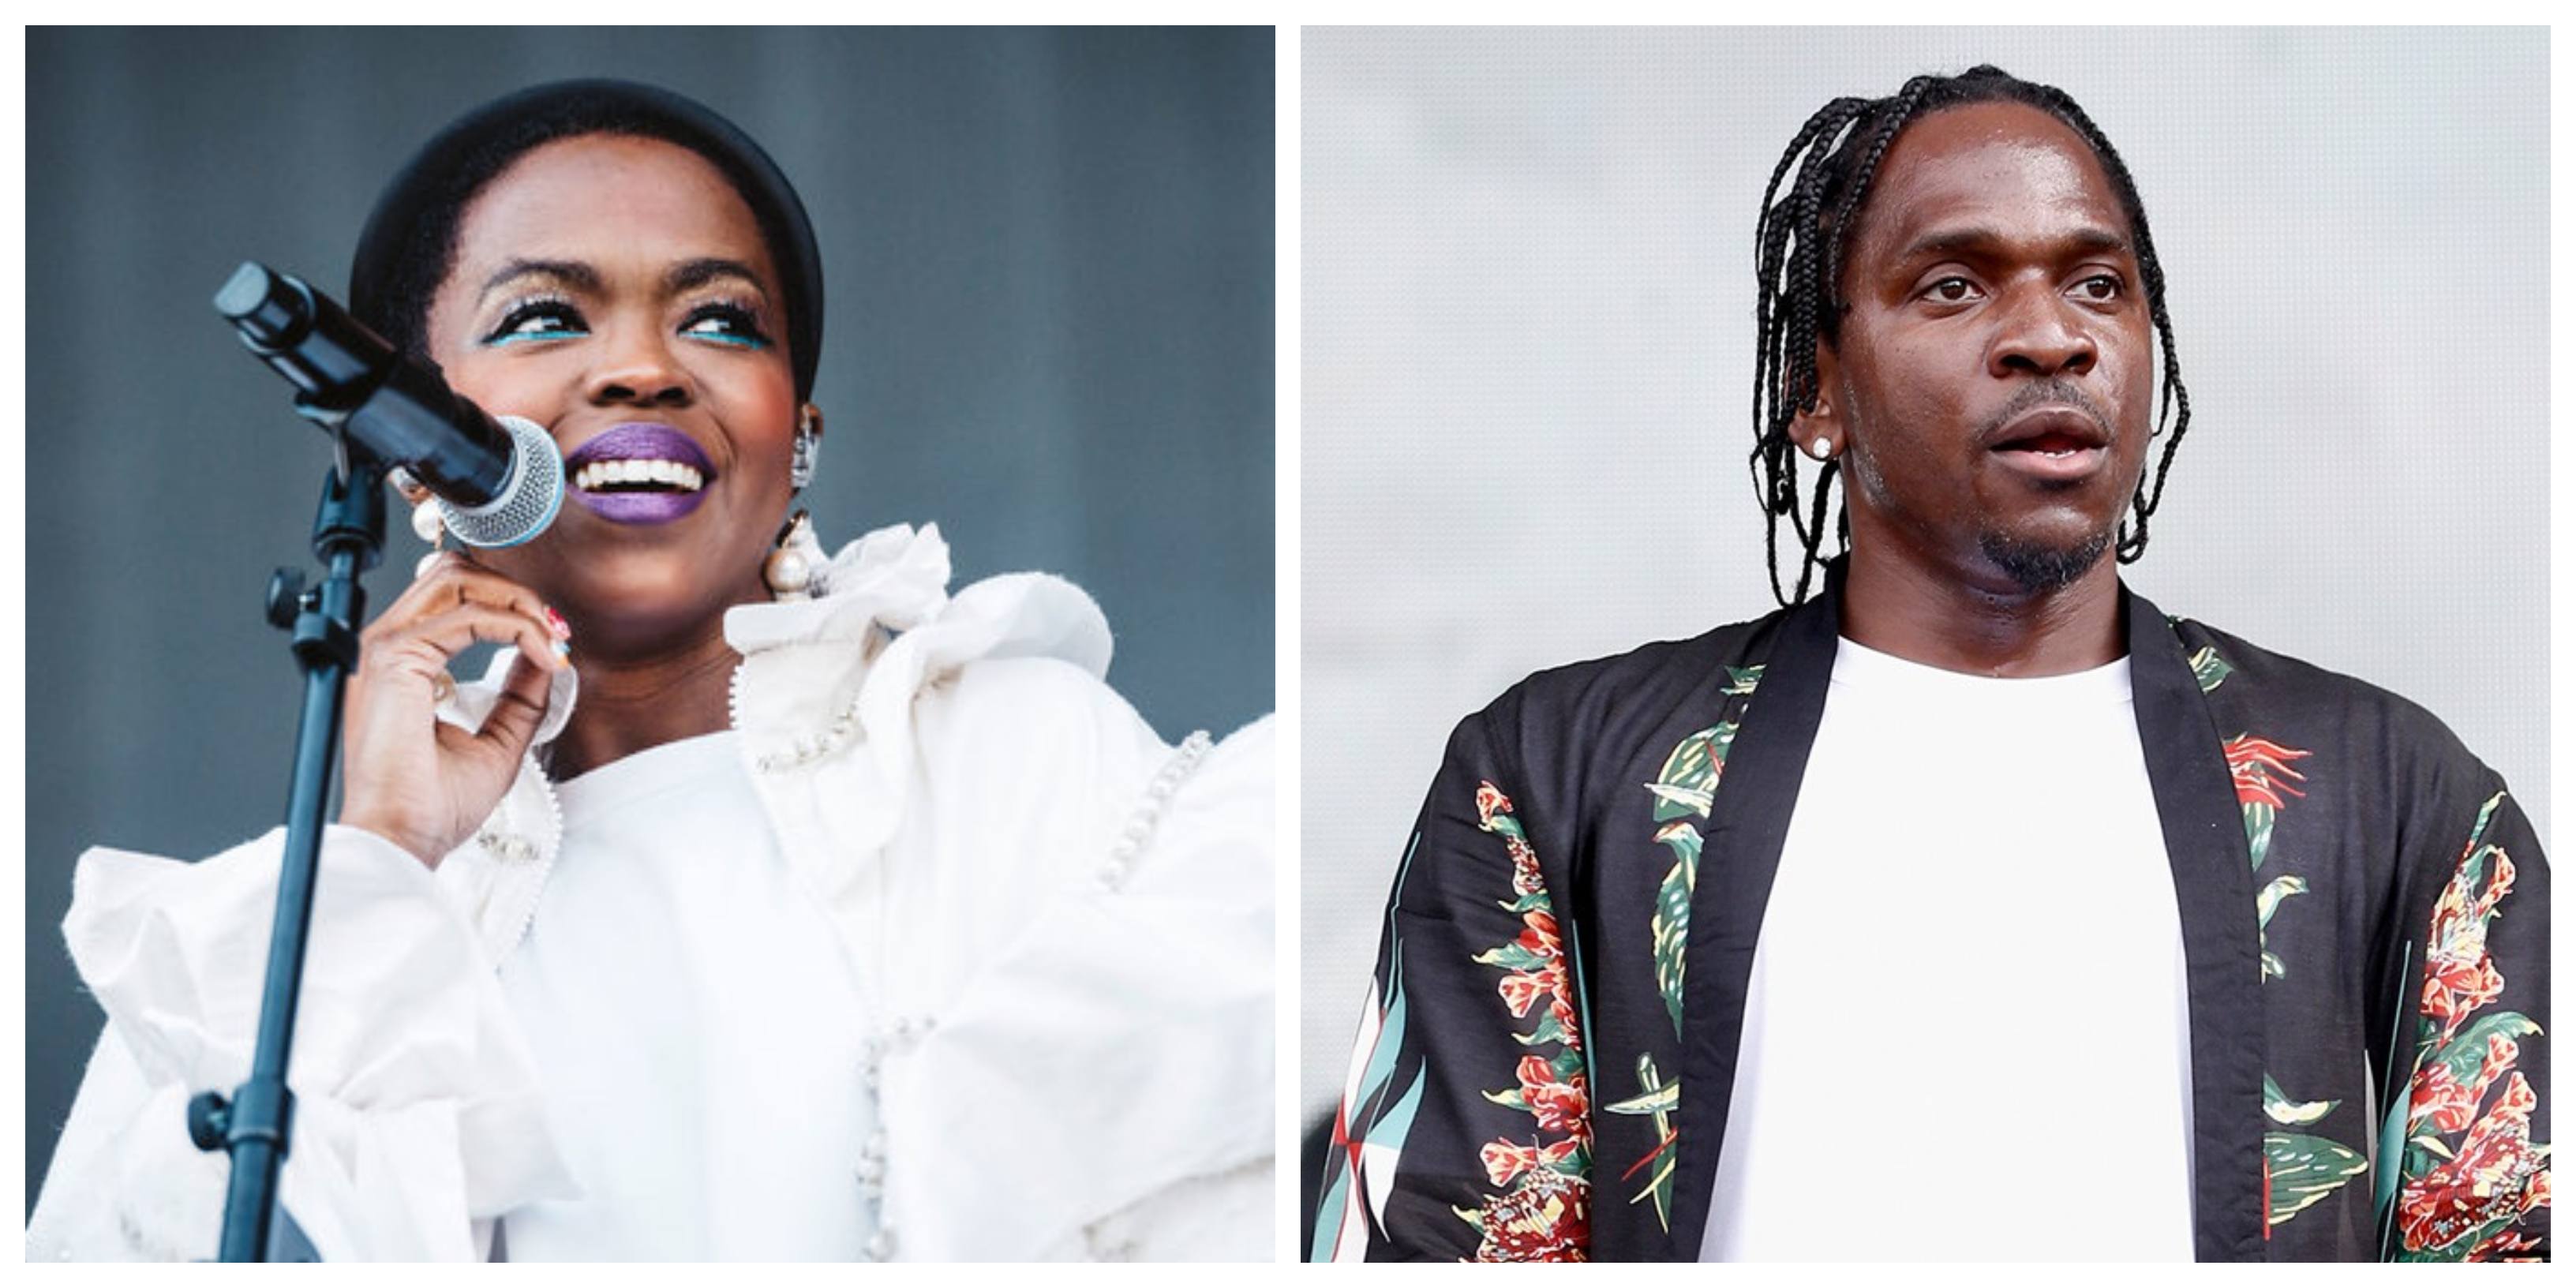 Pusha T se une a Ms.Lauryn Hill en “Coming Home”, una nueva canción producida por Kanye West